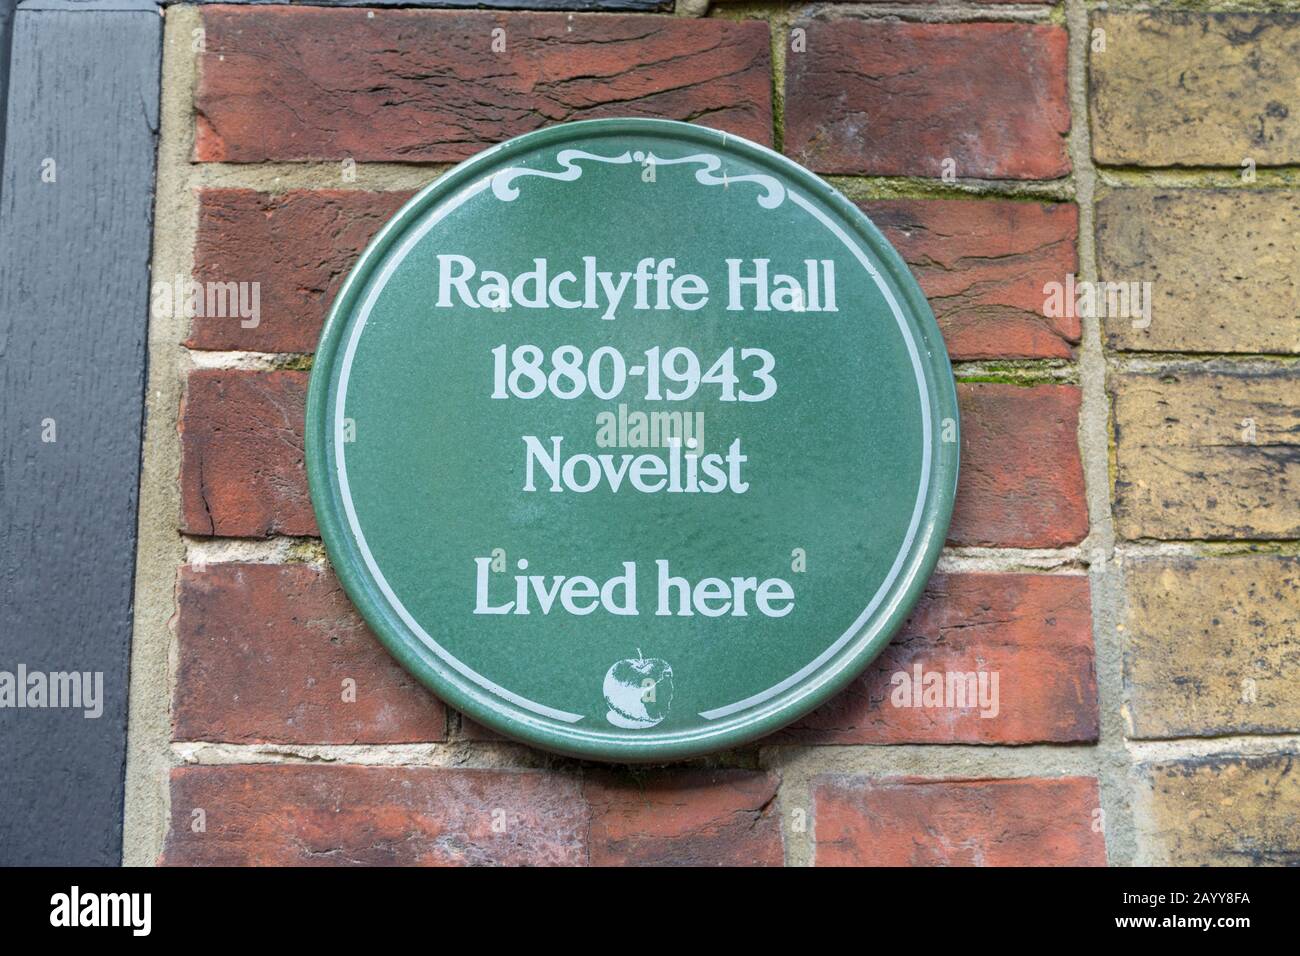 Radclyffe hall 1880-1943 romancier vécu ici, seigle, est sussex, royaume-uni Banque D'Images